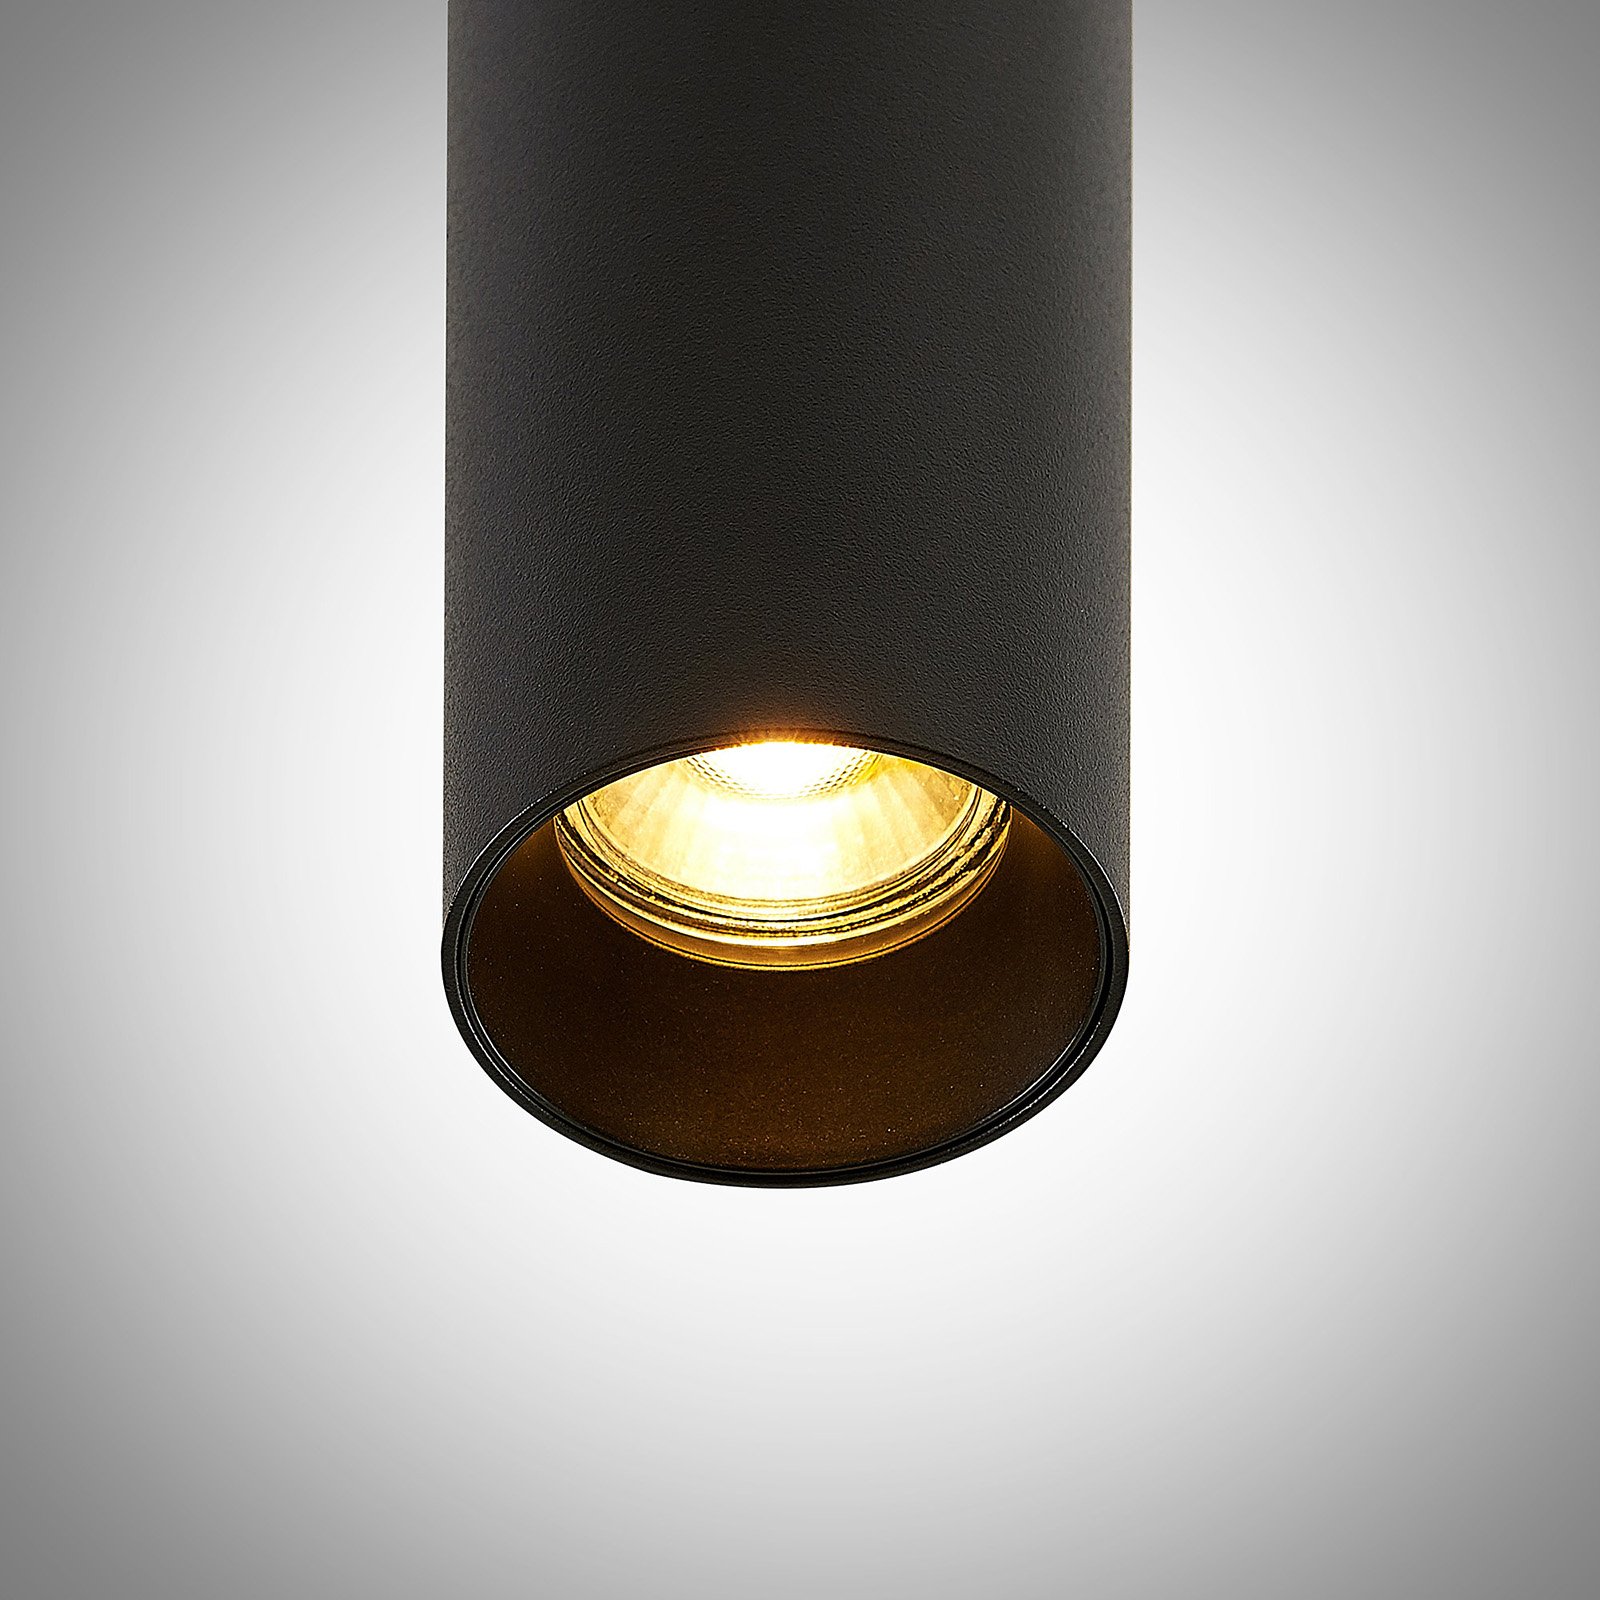 Archio Ejona závesná lampa, výška 35 cm, čierna